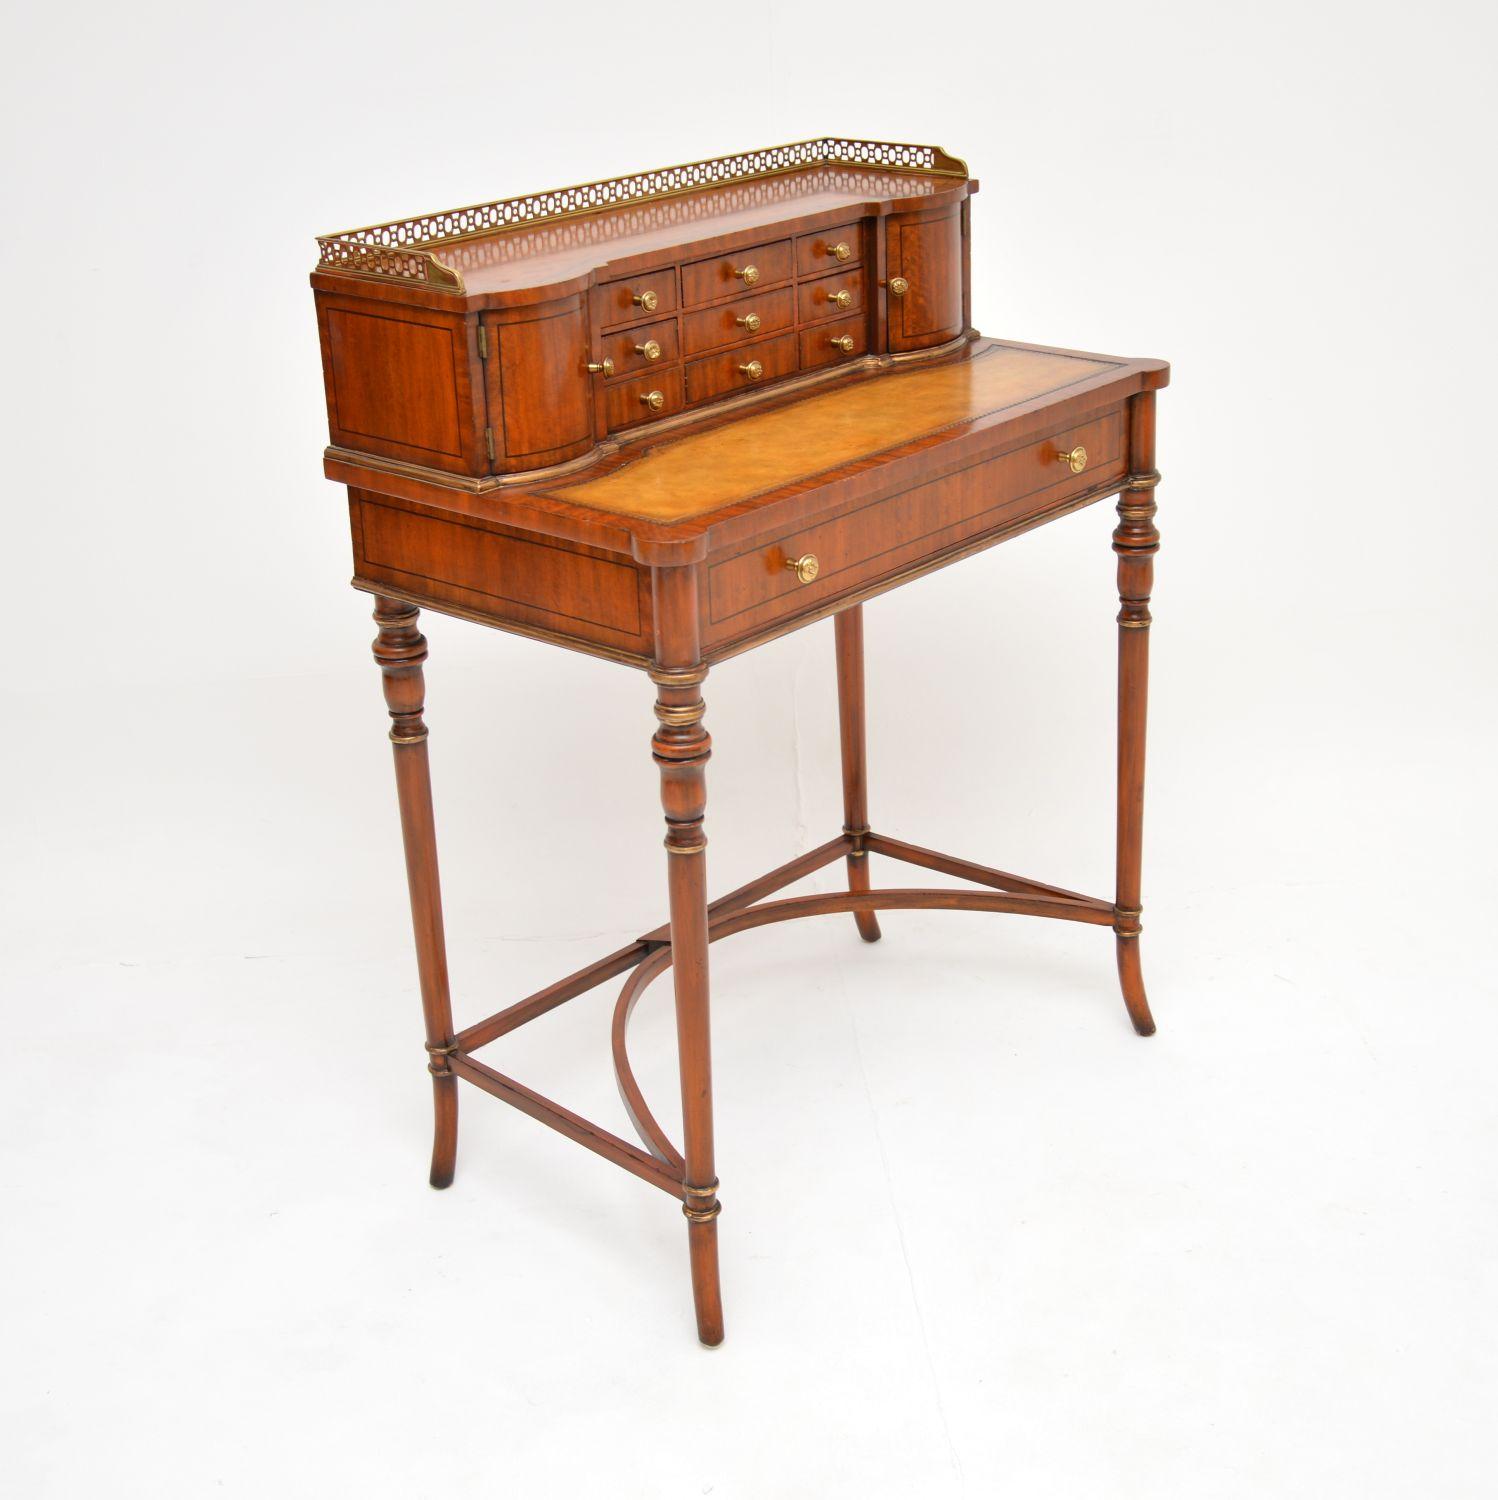 British Antique Sheraton Style Writing Table / Escritoire